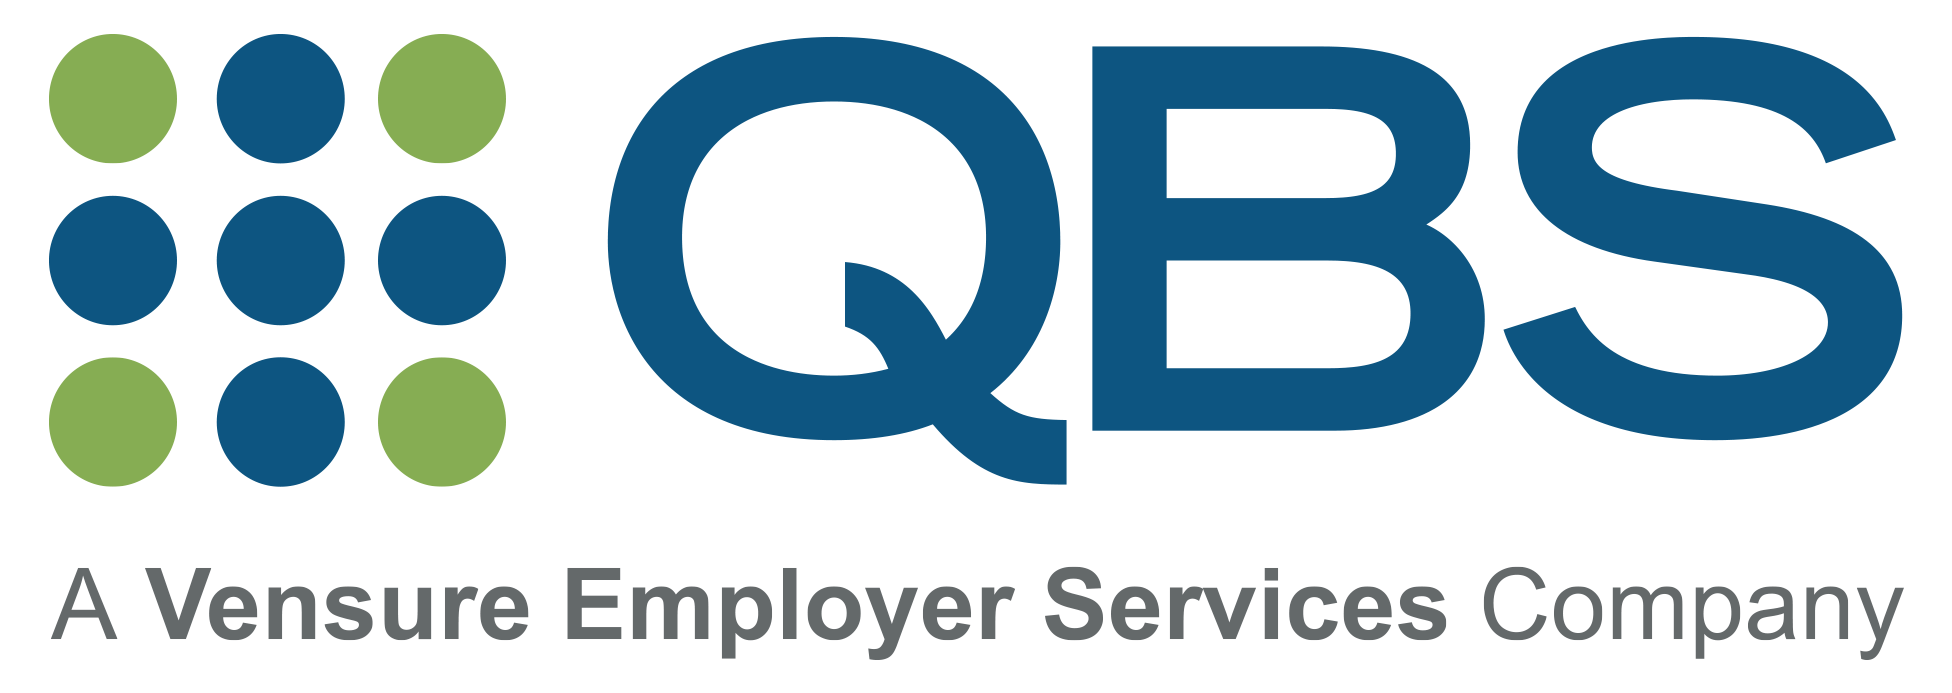 qbs logo